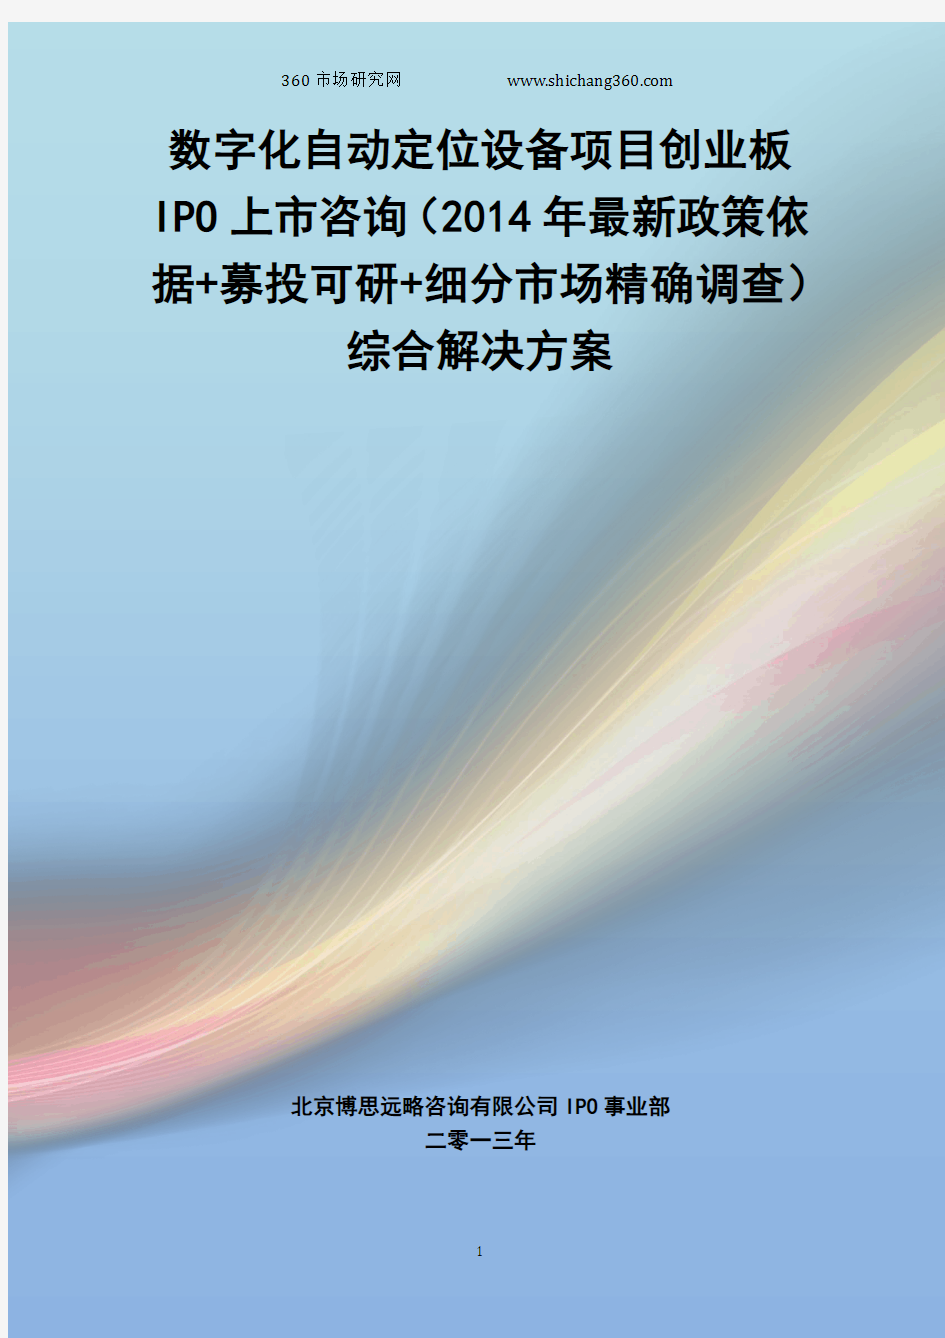 数字化自动定位设备IPO上市咨询(2014年最新政策+募投可研+细分市场调查)综合解决方案